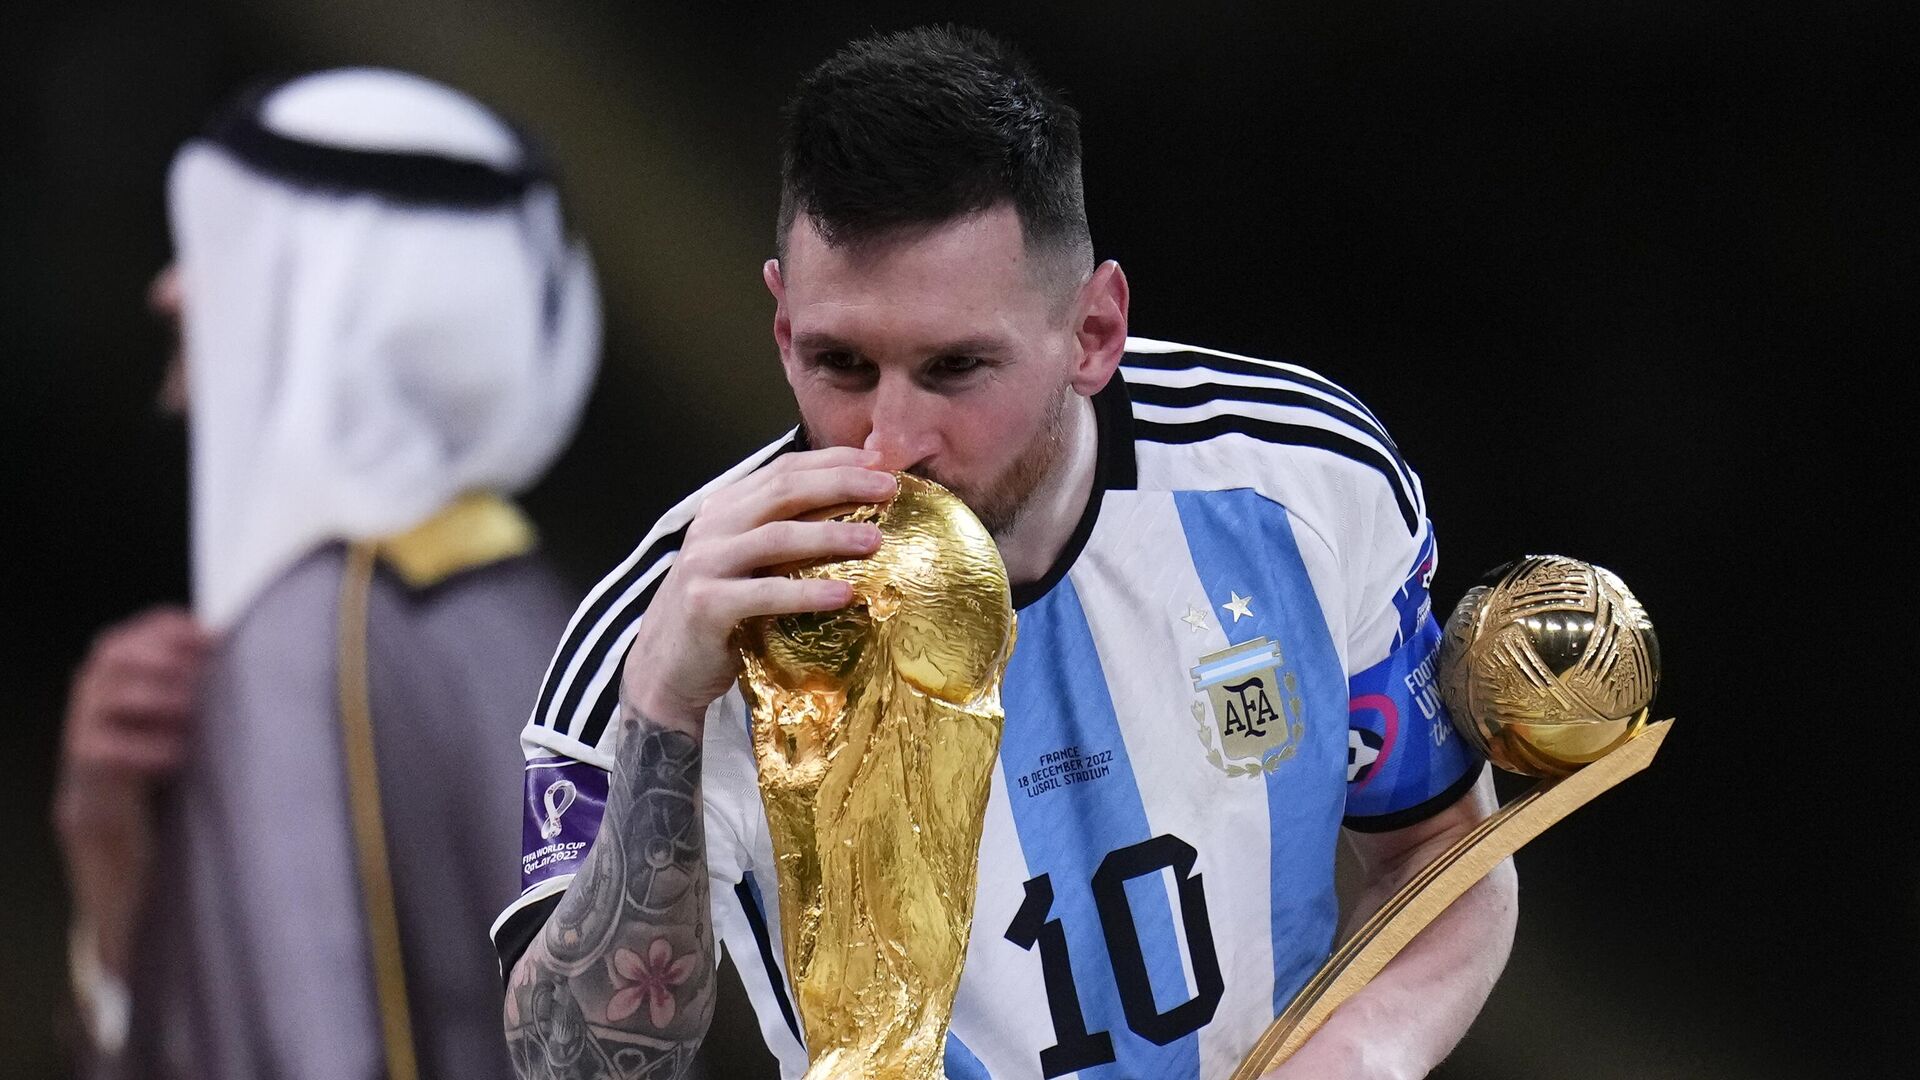 Argentina vence a França nos pênaltis e é tricampeã da Copa do Mundo -  18.12.2022, Sputnik Brasil